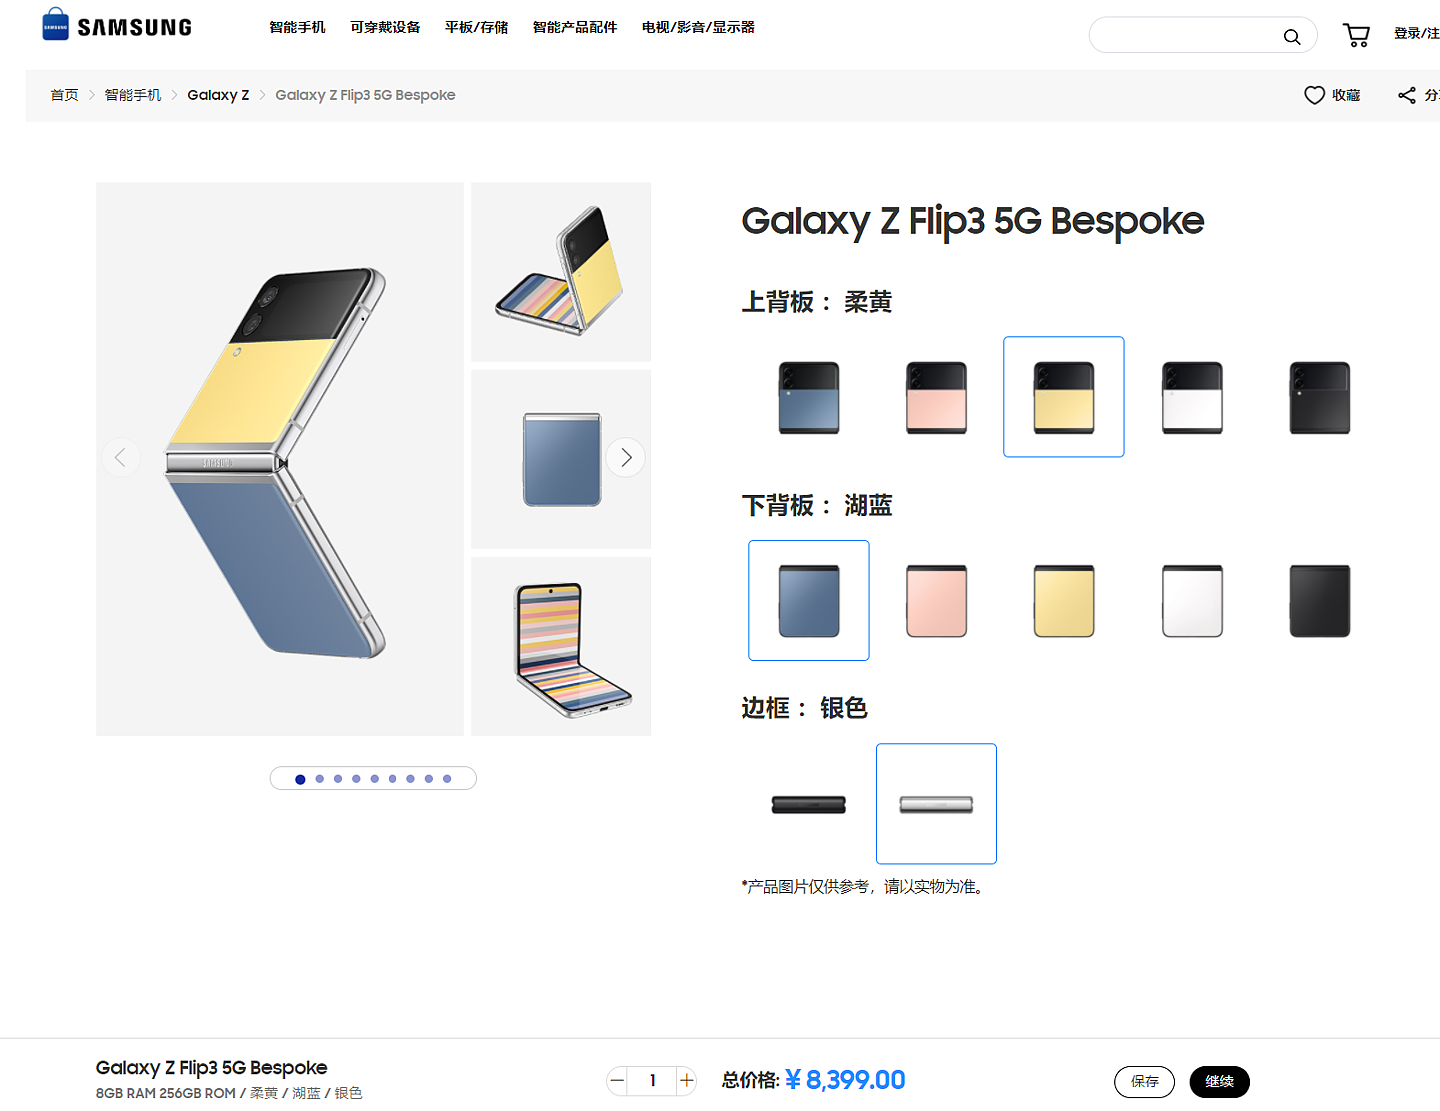 三星 Galaxy Z Flip3 Bespoke 版国内上架：支持后盖颜色自定义，售价 8399 元 - 2